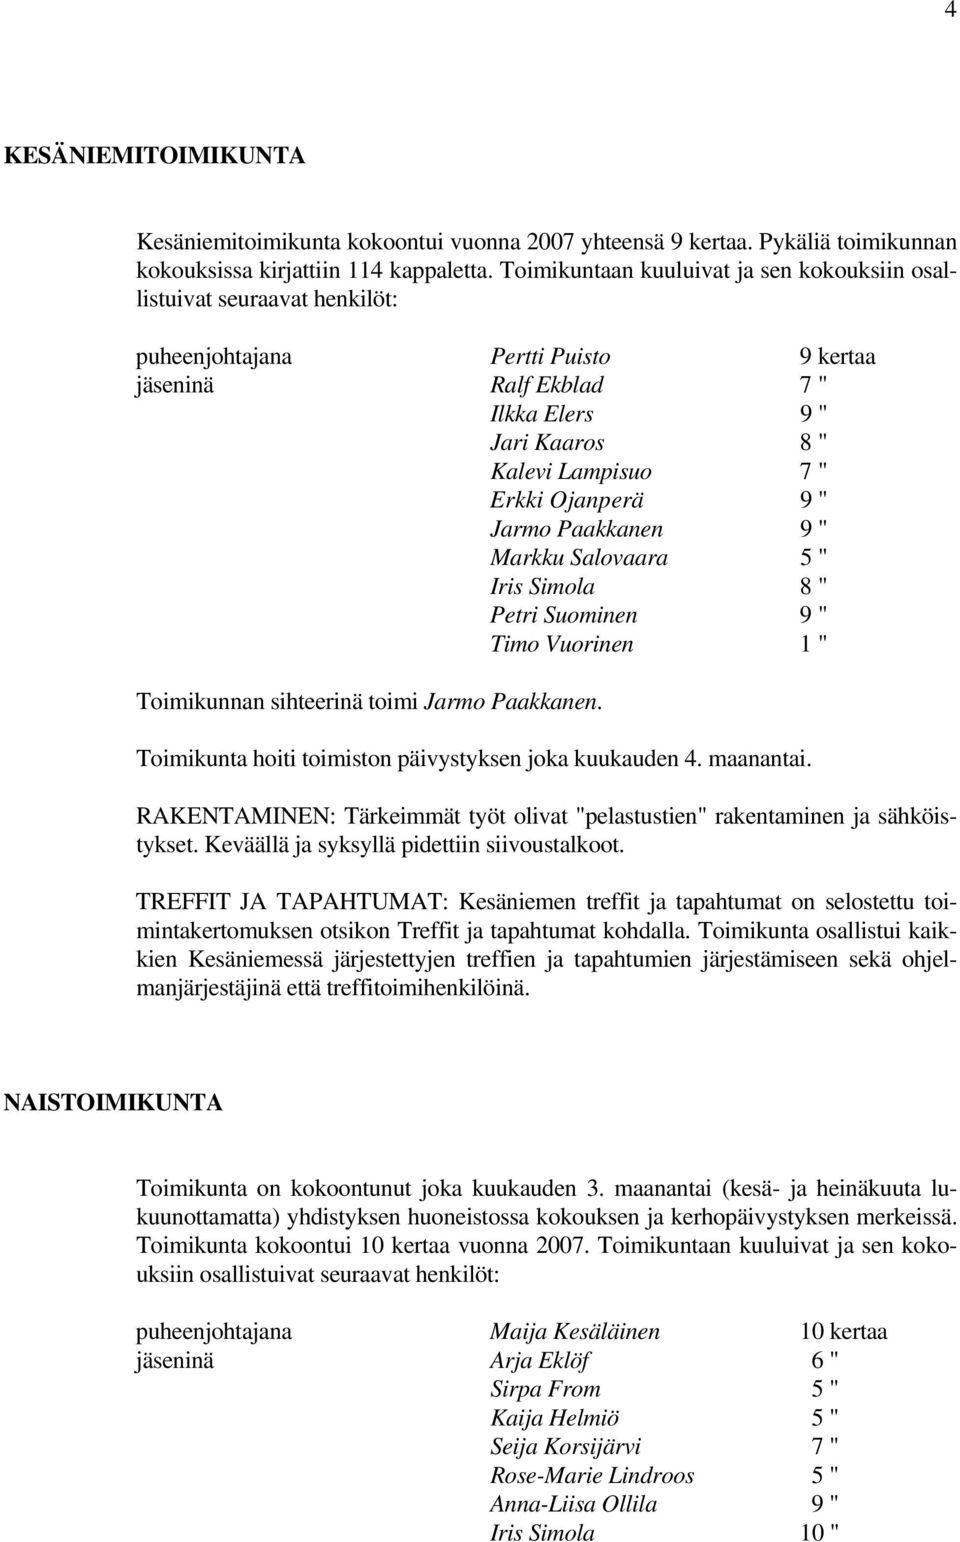 Ojanperä 9 " Jarmo Paakkanen 9 " Markku Salovaara 5 " Iris Simola 8 " Petri Suominen 9 " Timo Vuorinen 1 " Toimikunnan sihteerinä toimi Jarmo Paakkanen.